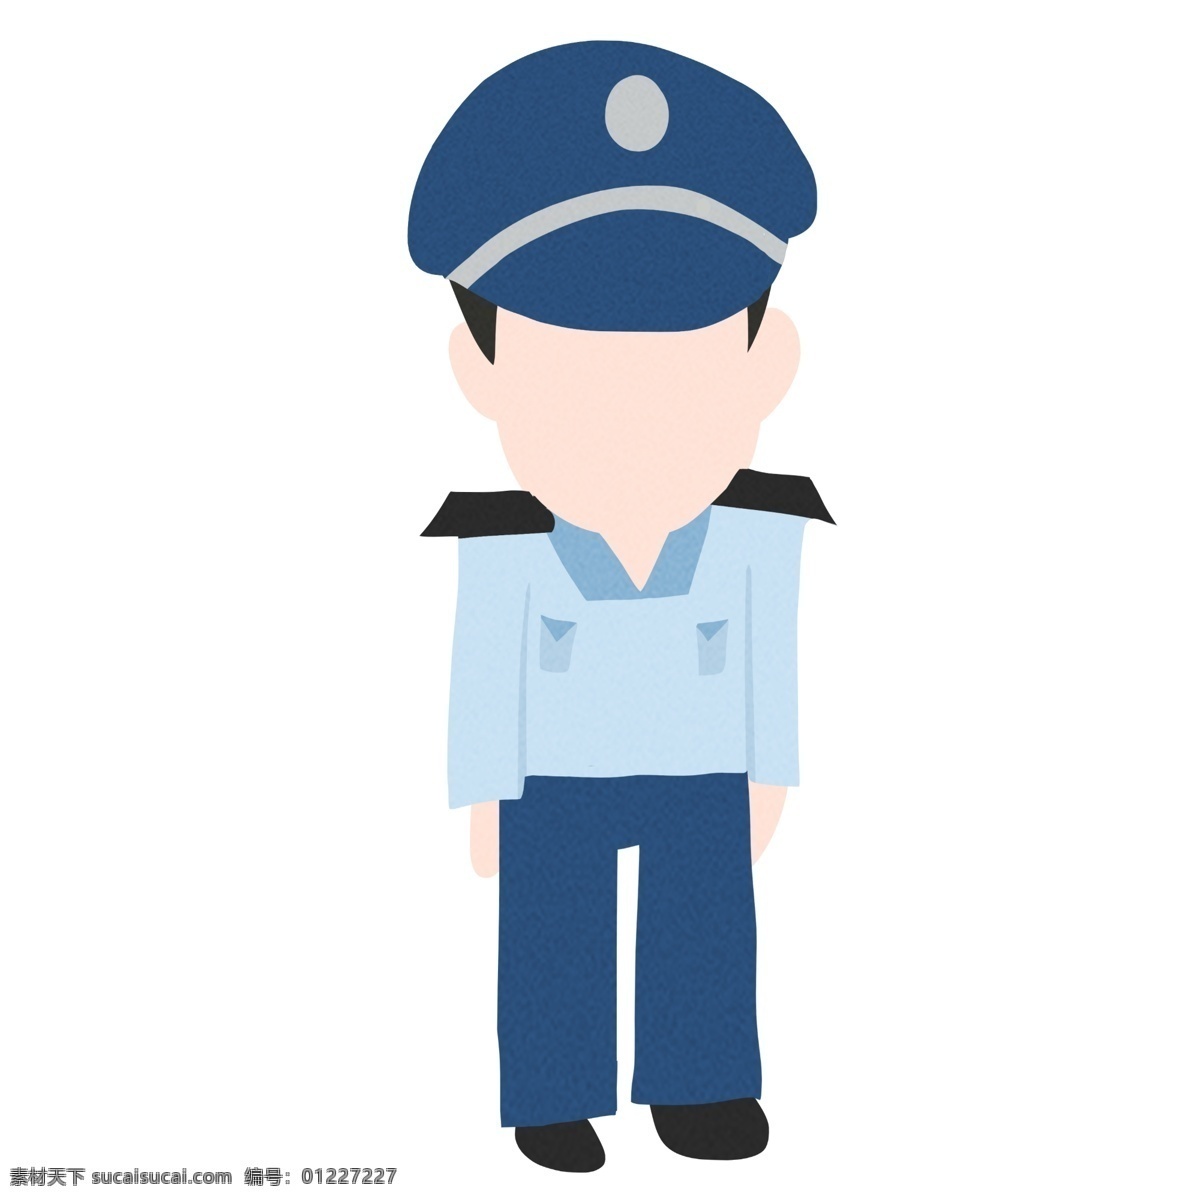 立正 警察 装饰 插画 立正的警察 开心的警察 警察装饰 微笑的警察 警察插画 立体警察 工作的警察